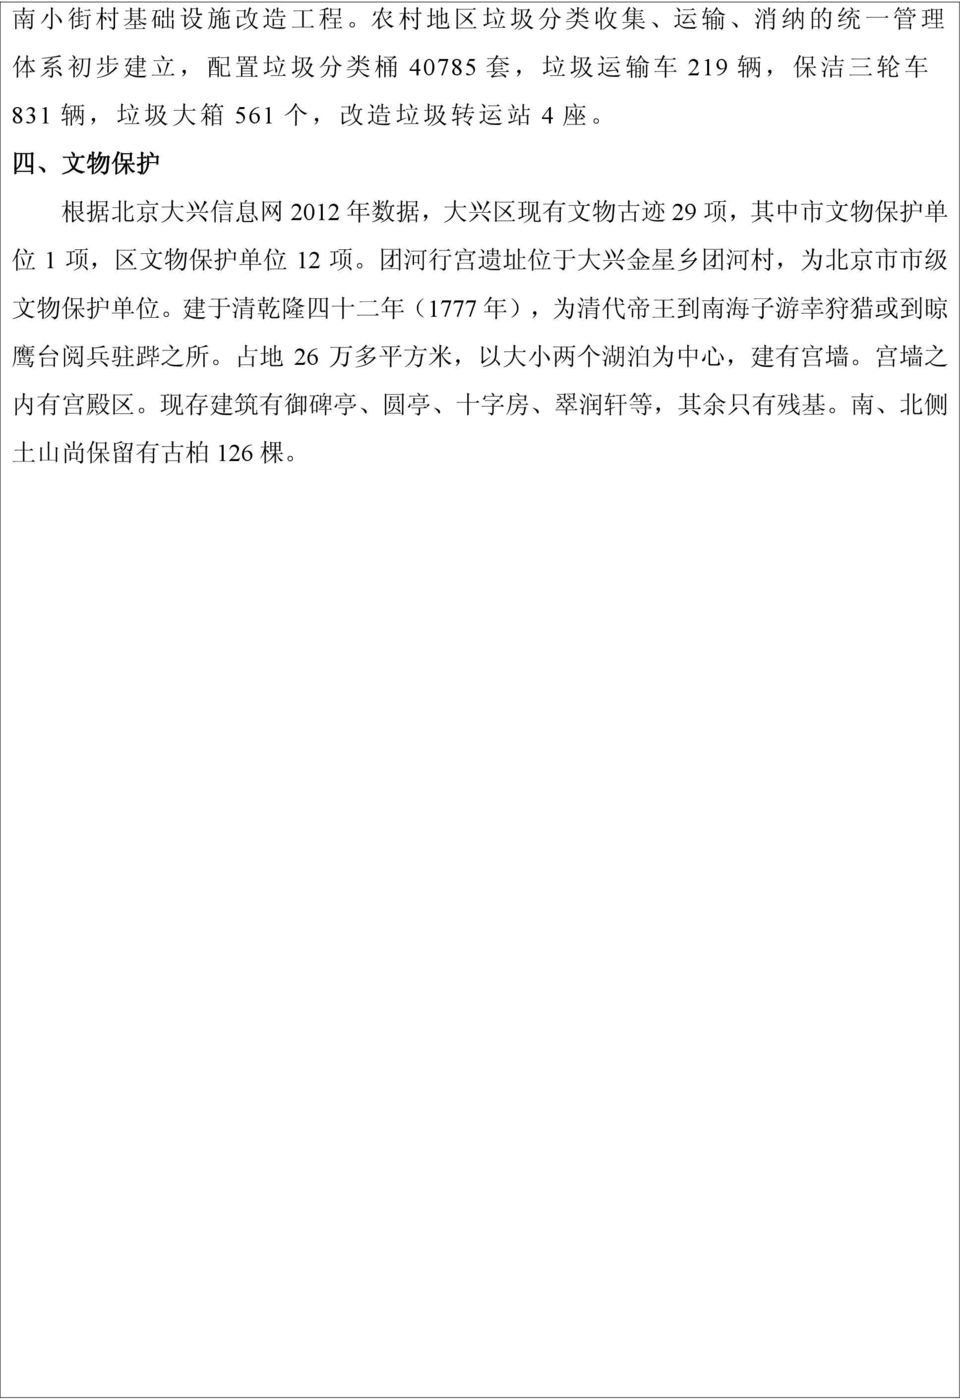 团 河 行 宫 遗 址 位 于 大 兴 金 星 乡 团 河 村, 为 北 京 市 市 级 文 物 保 护 单 位 建 于 清 乾 隆 四 十 二 年 (1777 年 ), 为 清 代 帝 王 到 南 海 子 游 幸 狩 猎 或 到 晾 鹰 台 阅 兵 驻 跸 之 所 占